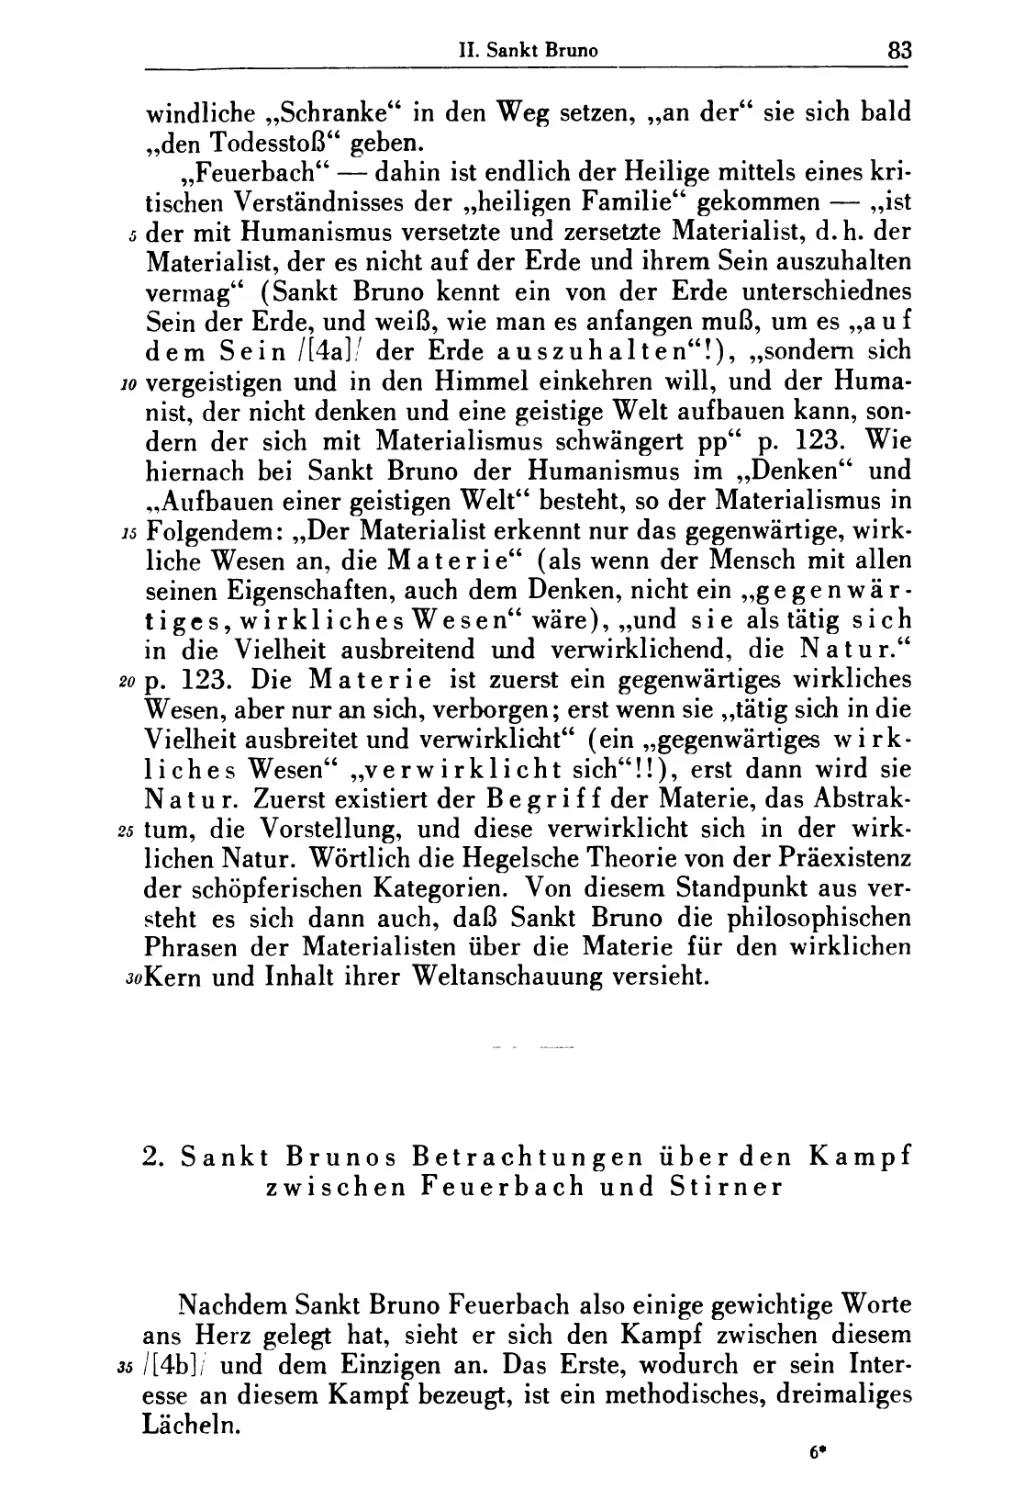 2. Sankt Brunos Betrachtungen über den Kampf zwischen Feuerbach und Stimer